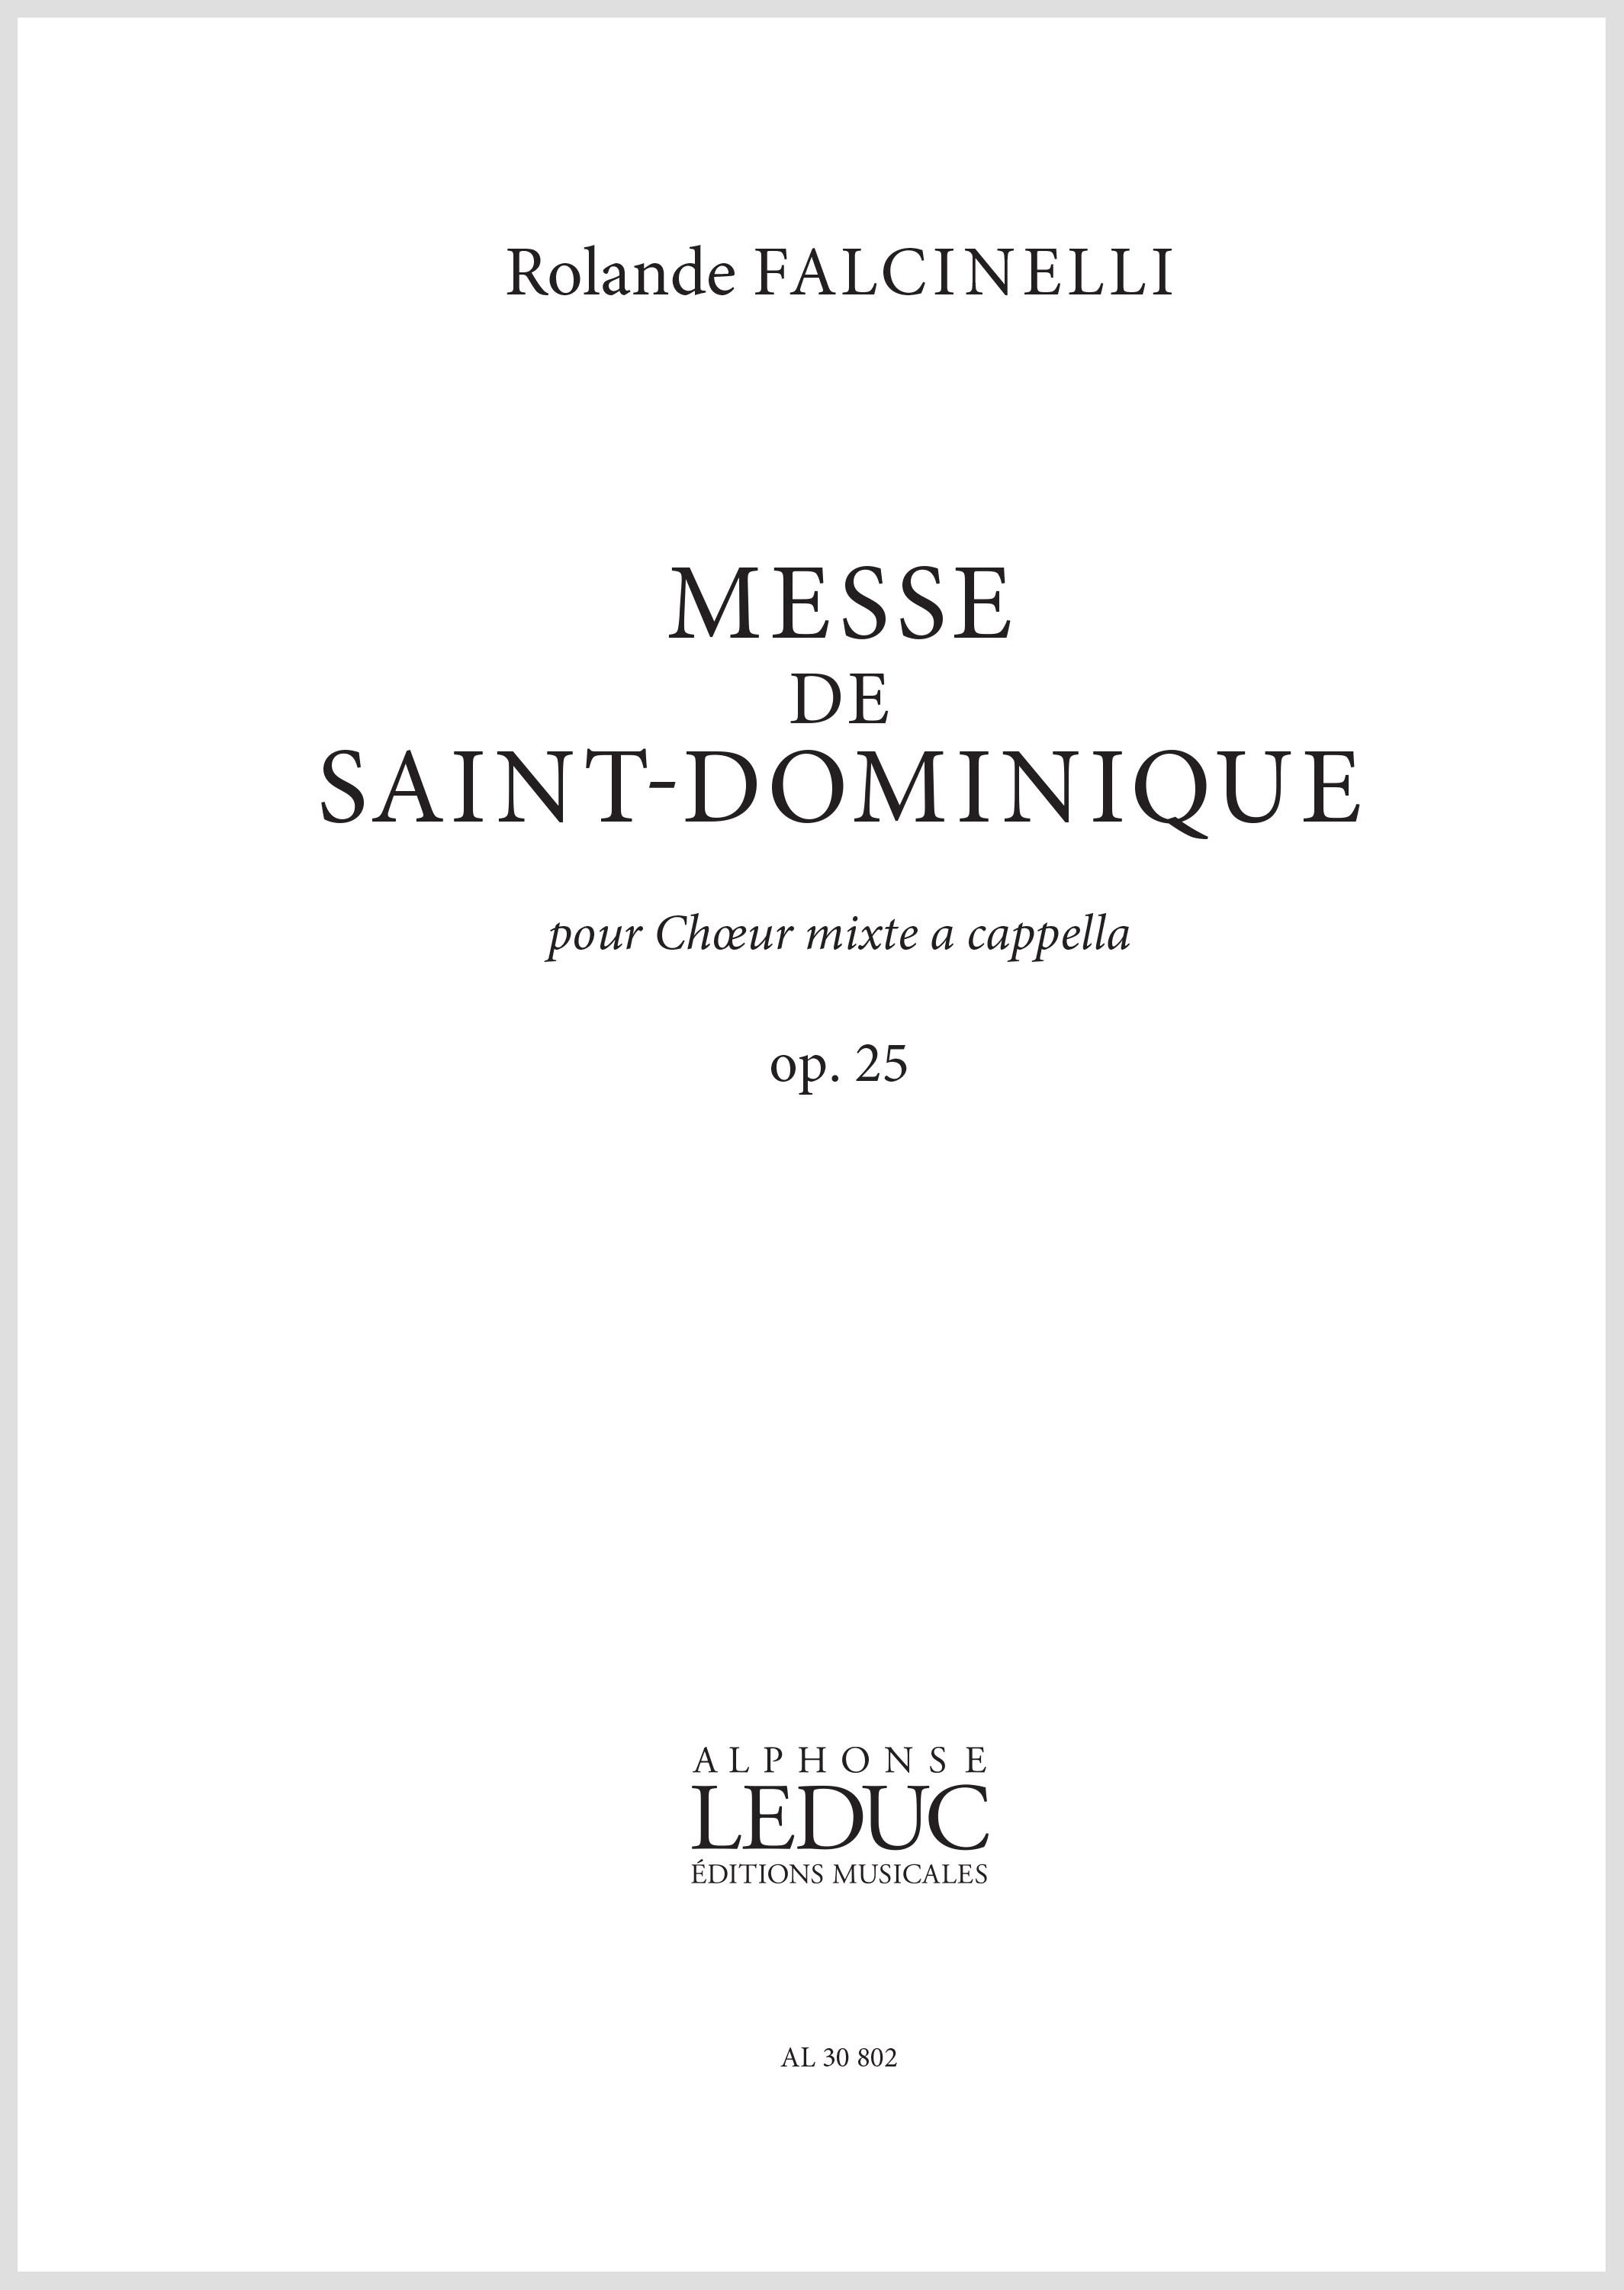 Rolande Falcinelli: Messe De Saint-Dominique: Mixed Choir: Vocal Score